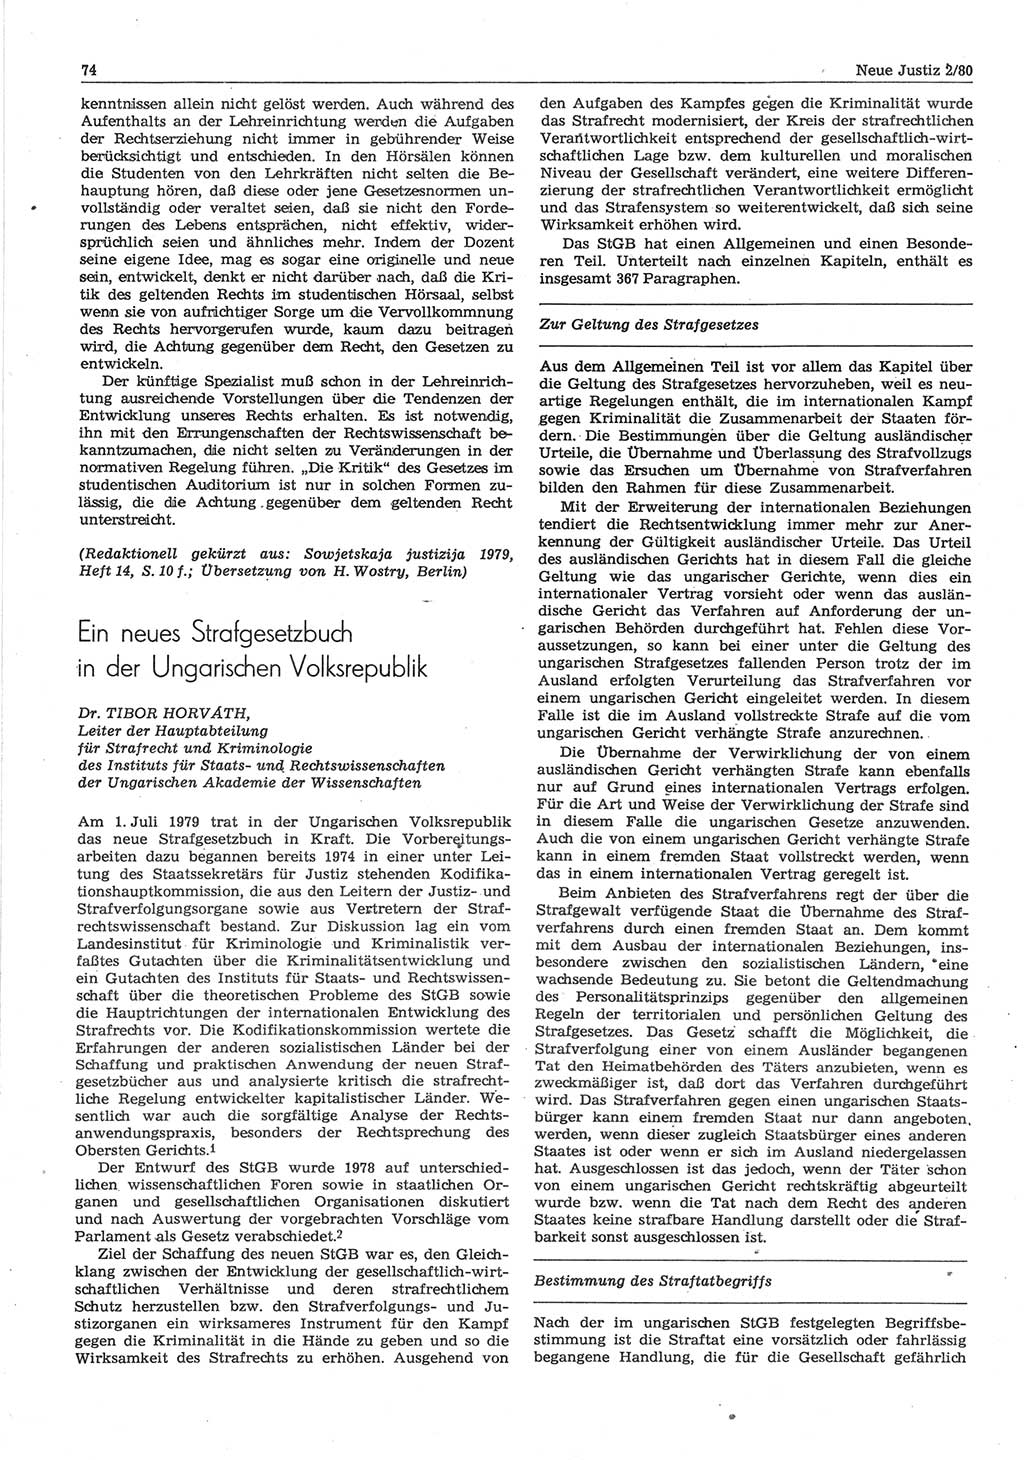 Neue Justiz (NJ), Zeitschrift für sozialistisches Recht und Gesetzlichkeit [Deutsche Demokratische Republik (DDR)], 34. Jahrgang 1980, Seite 74 (NJ DDR 1980, S. 74)